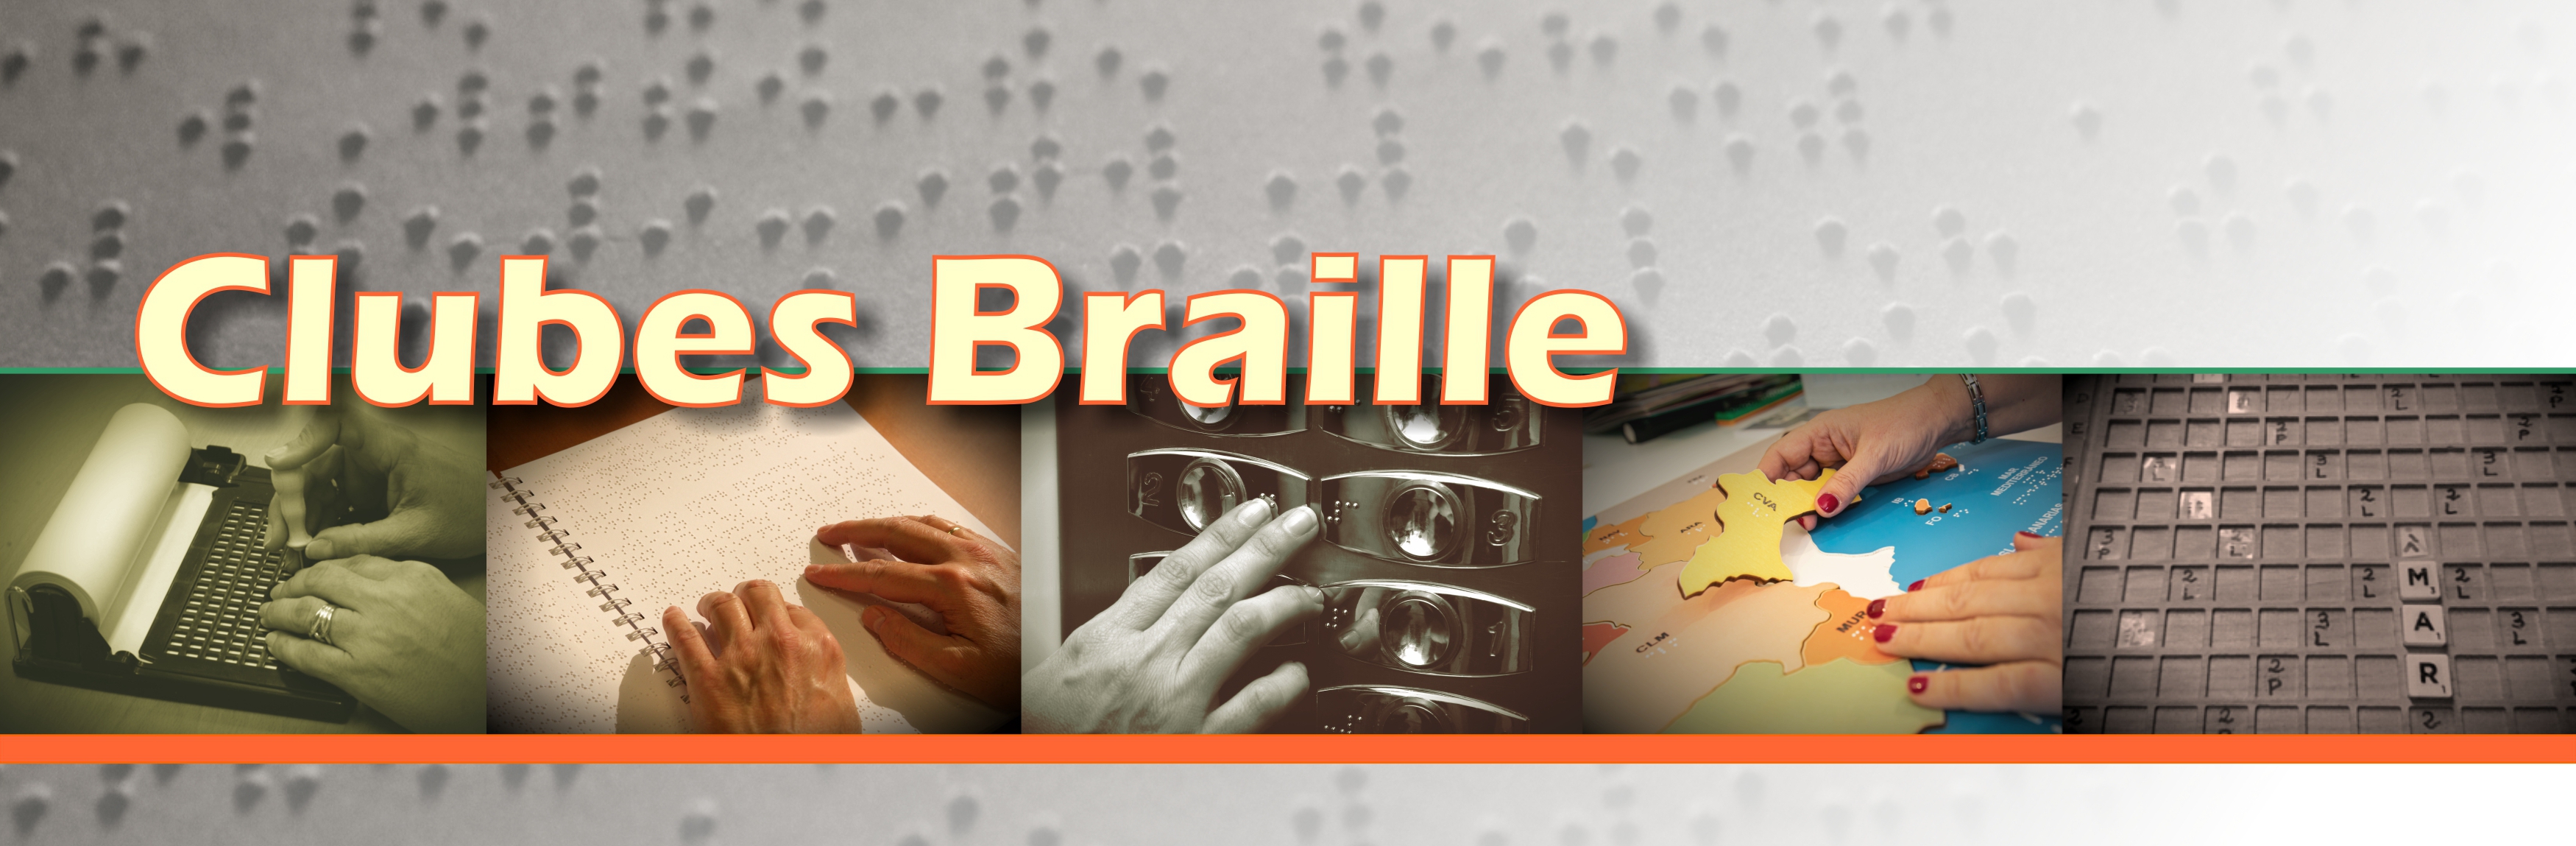 Imagen con el texto “Clubes Braille” con 5 fotos alusivas a diferentes usos del braille